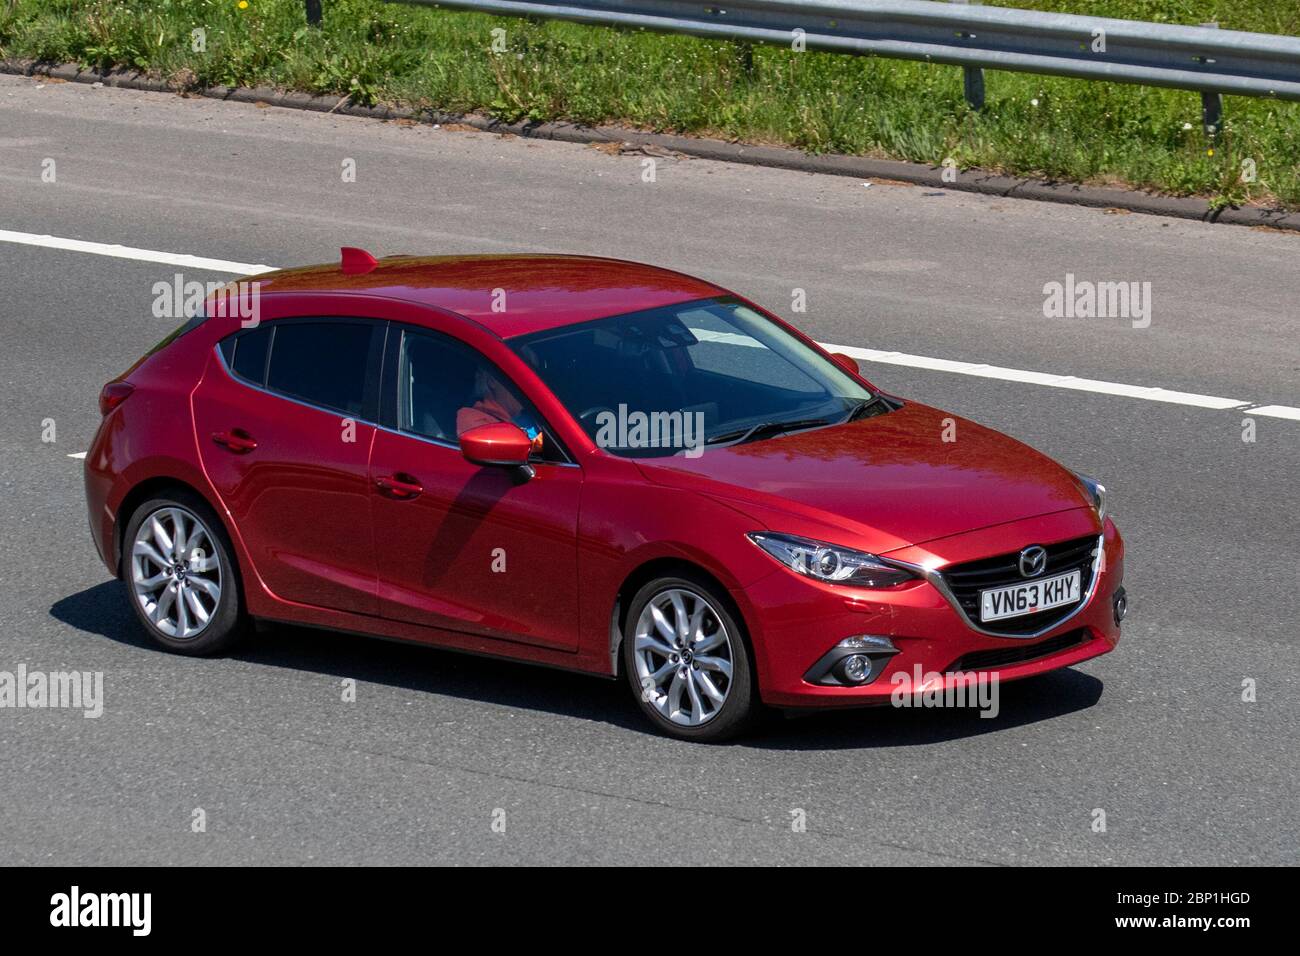 Fotostrecke: Mit sportlichen Anbauteilen zum neuen Look für den Mazda3